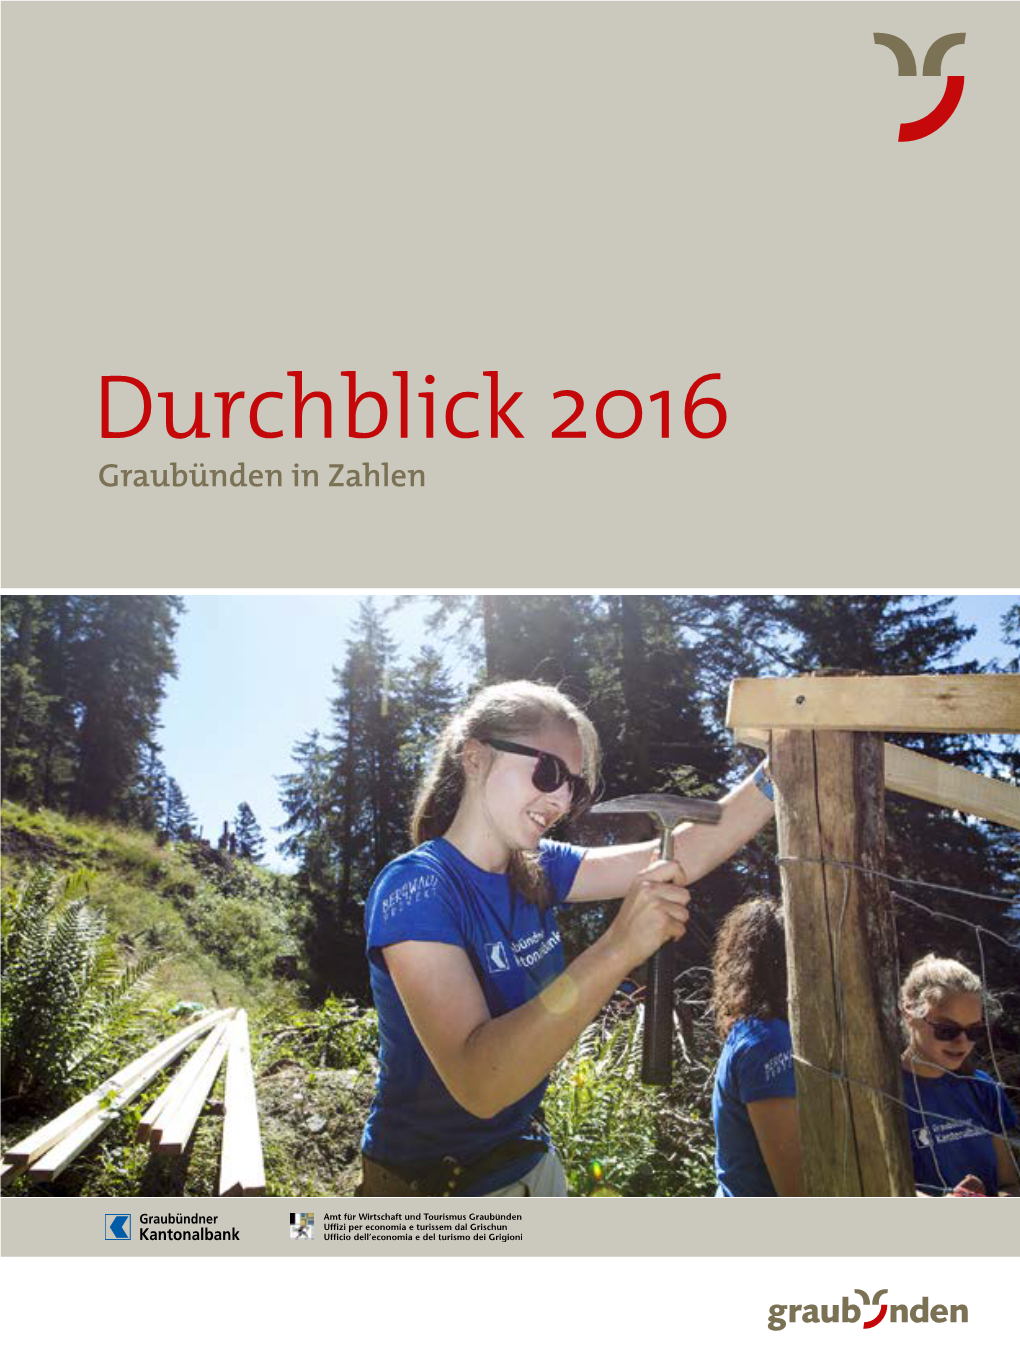 Durchbllick 2016, Graubünden in Zahlen